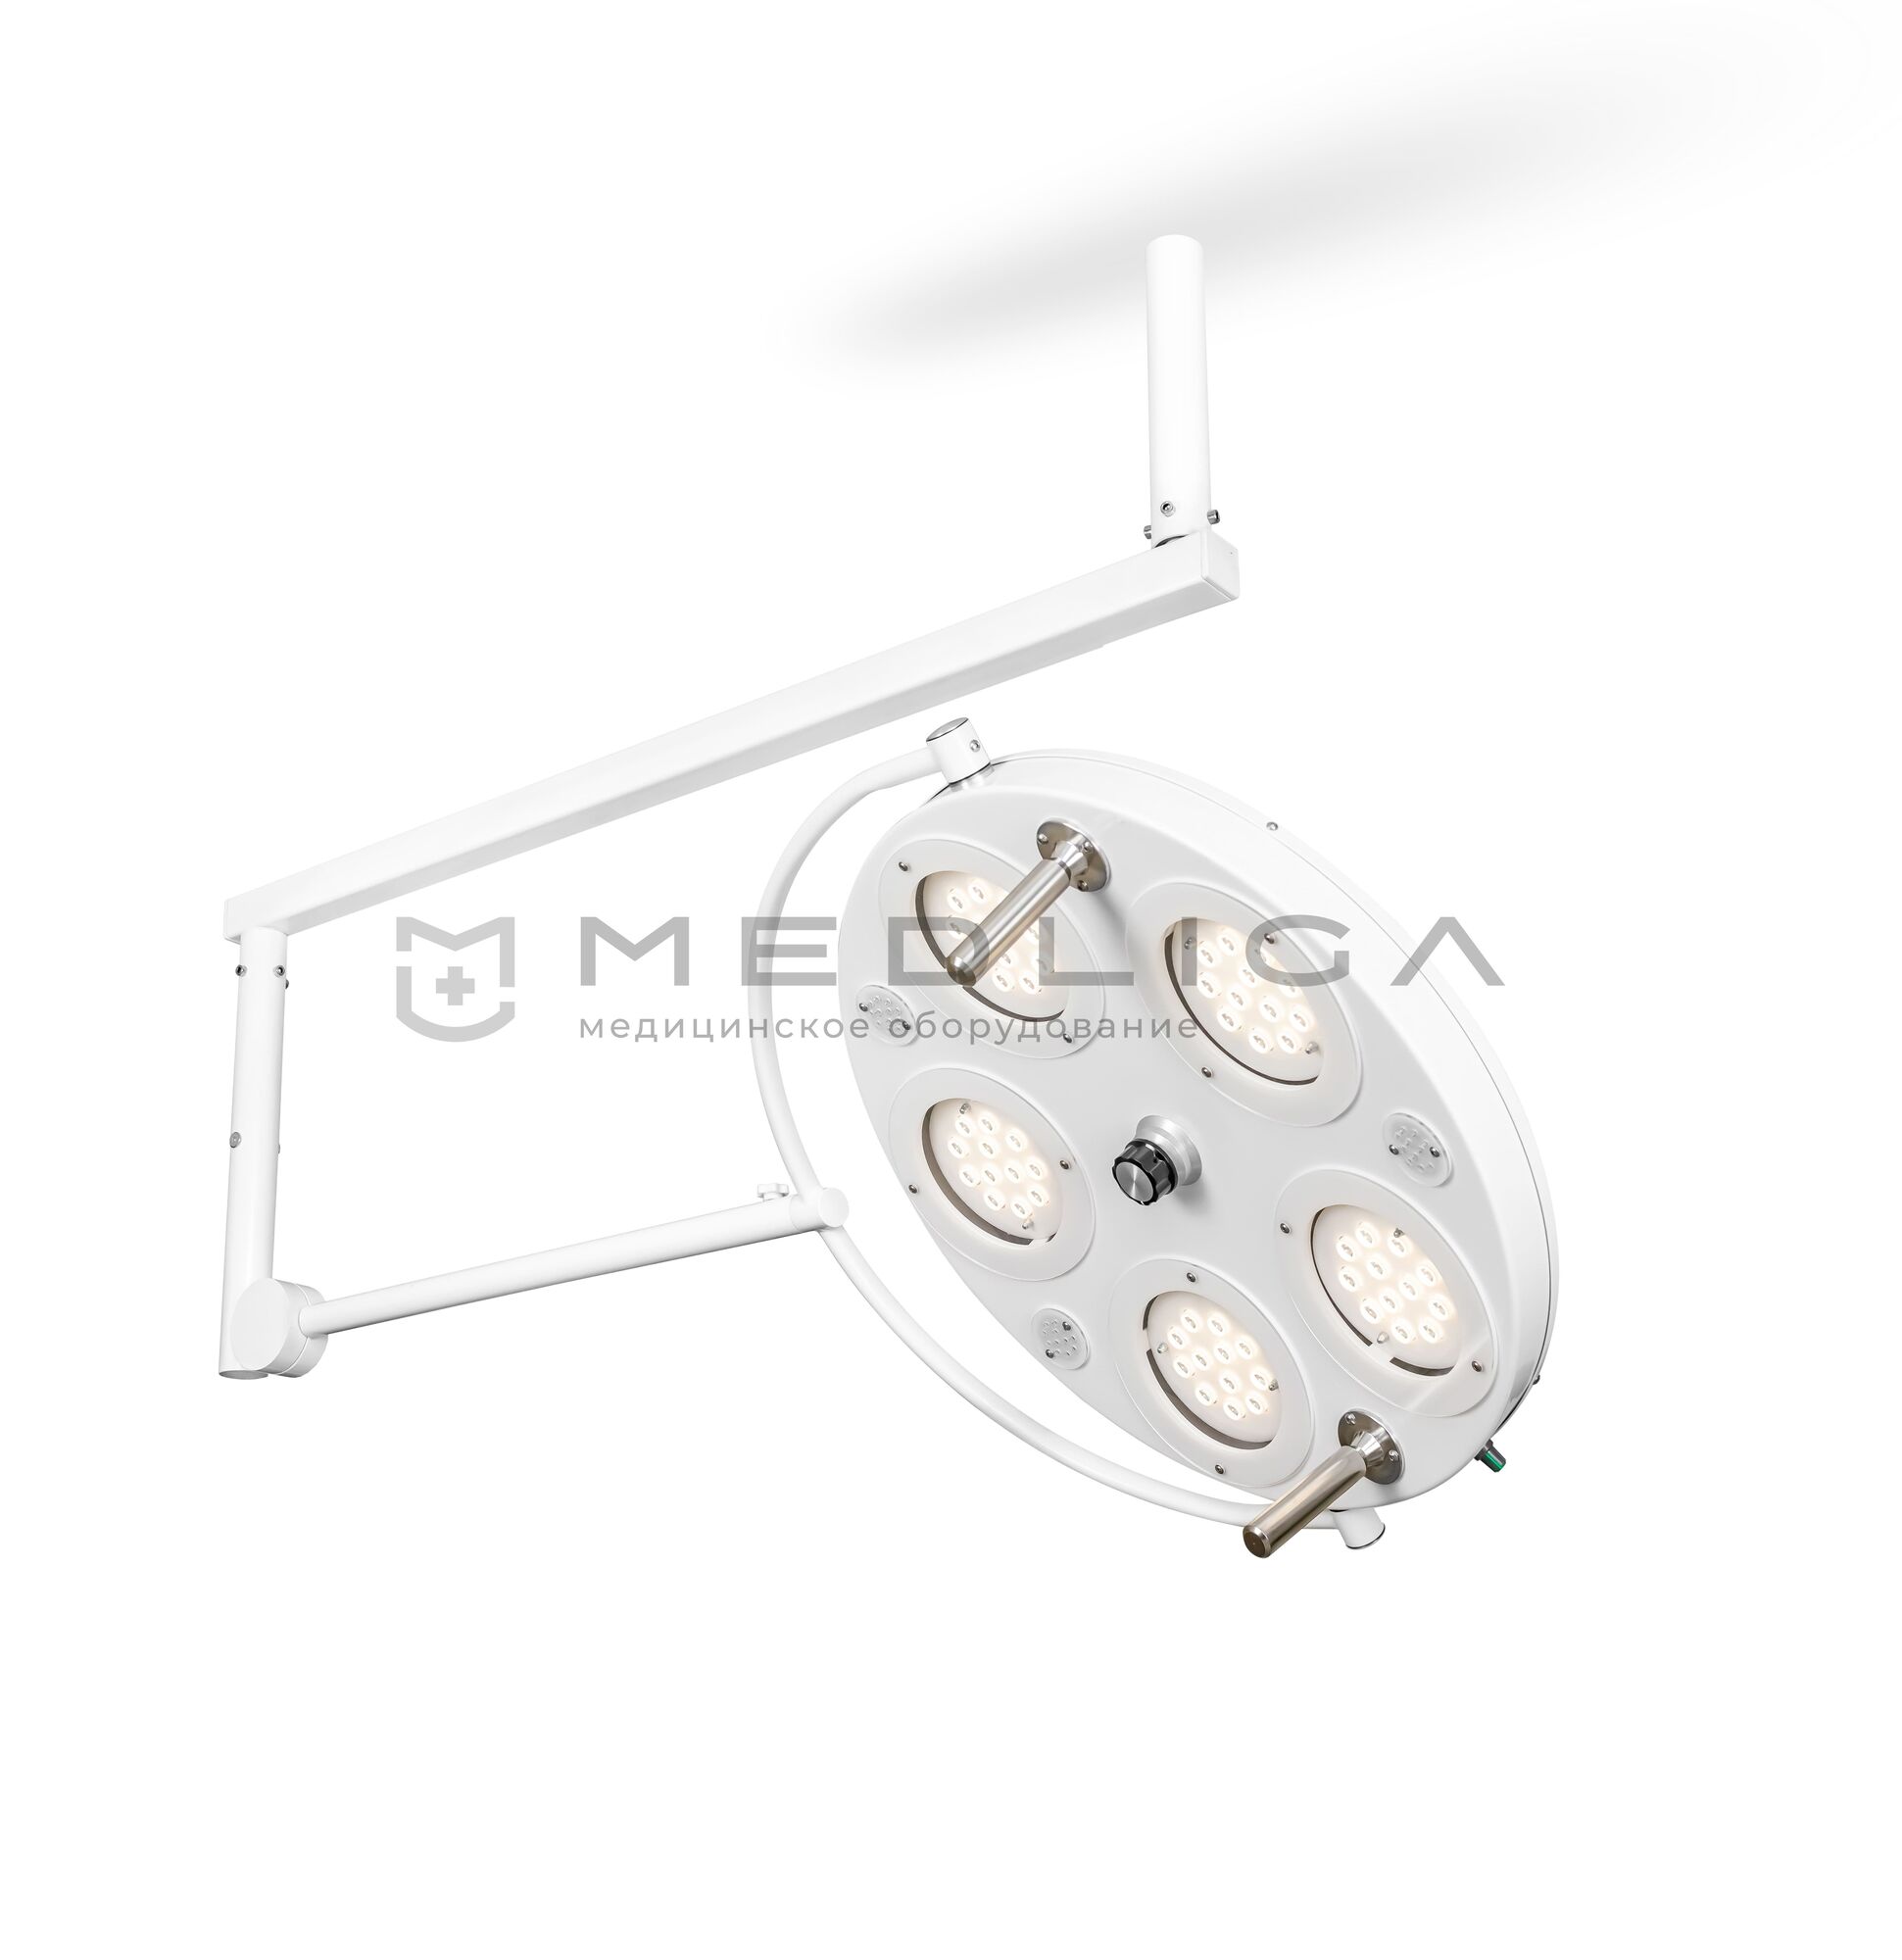 Медицинский хирургический светильник FotonFly 6М